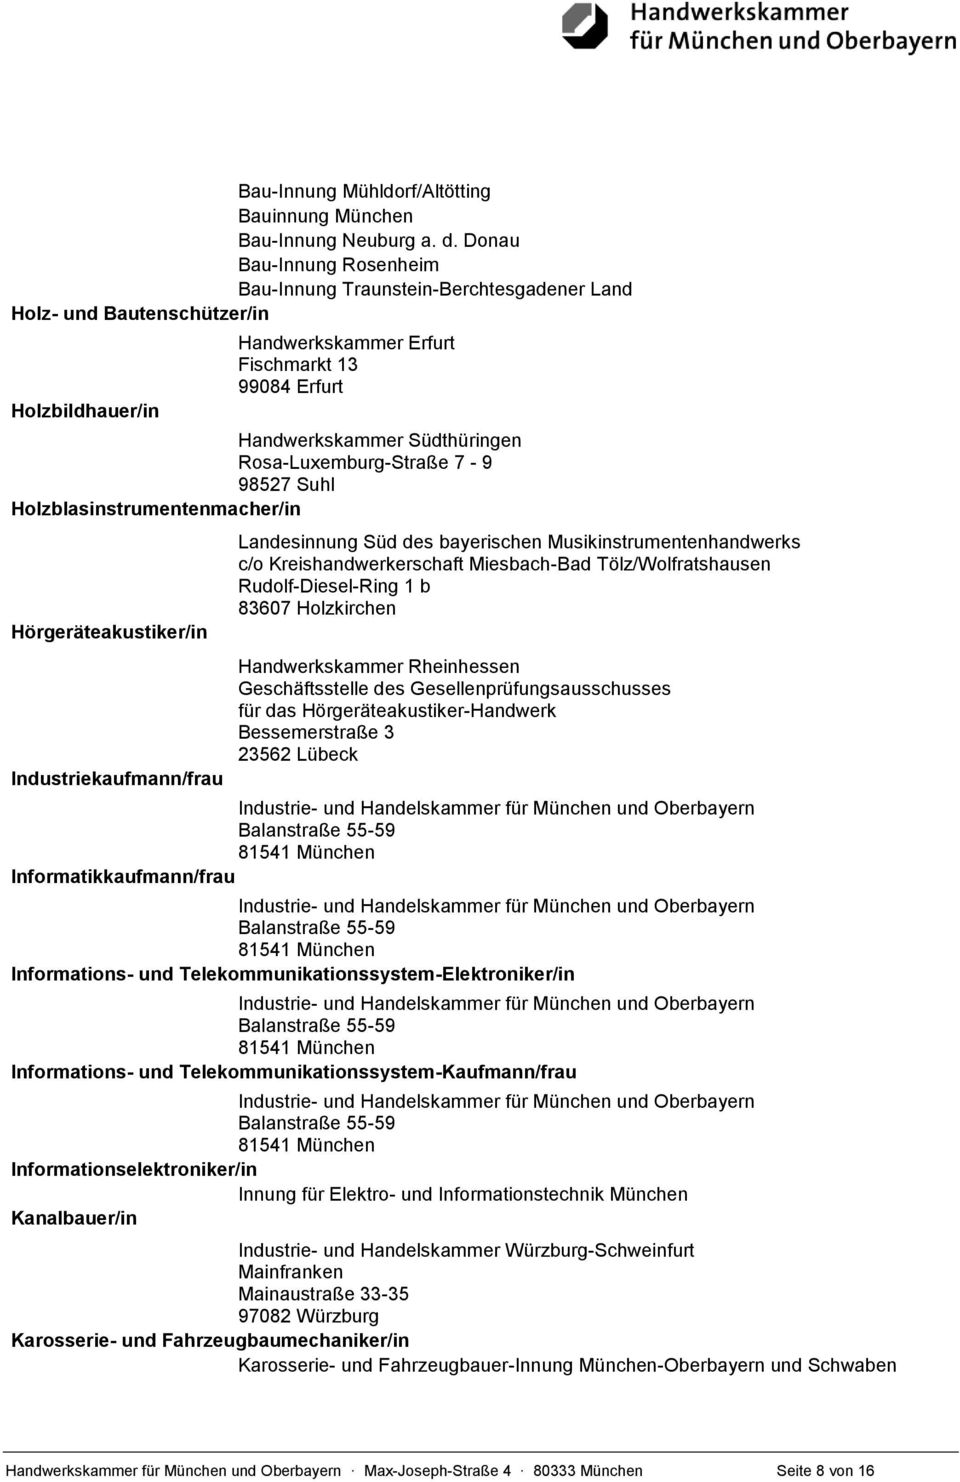 Rosa-Luxemburg-Straße 7-9 98527 Suhl Holzblasinstrumentenmacher/in Hörgeräteakustiker/in Industriekaufmann/frau Landesinnung Süd des bayerischen Musikinstrumentenhandwerks c/o Kreishandwerkerschaft